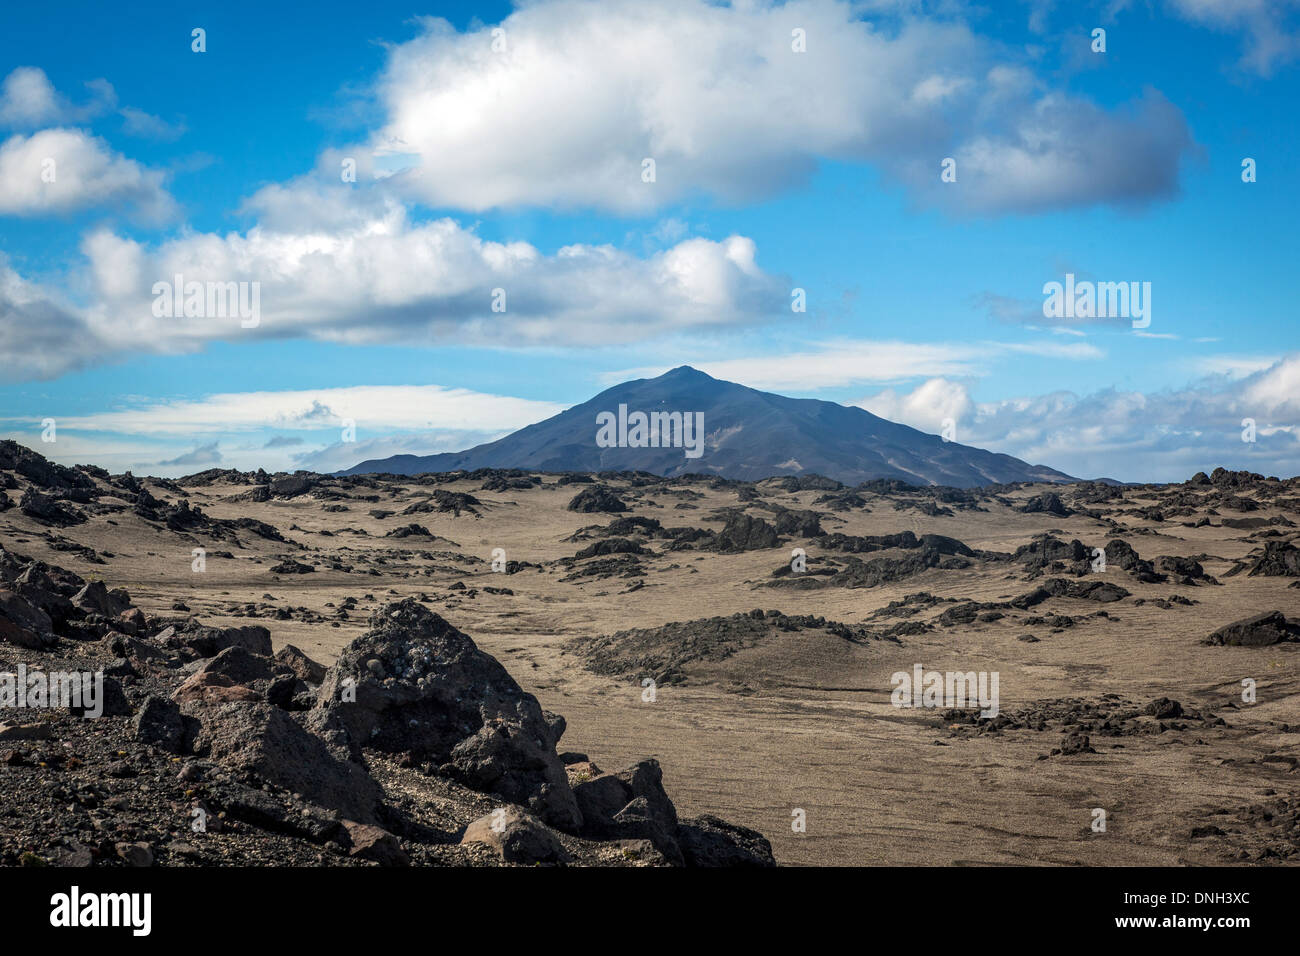 Vulcano sulla F 910 sentiero che conduce al vulcano ASKJA, deserto vulcanico e campo di lava, ALTIPIANI DI ISLANDA, NORDURLAND EYSTRA, centro orientale dell Islanda, EUROPA Foto Stock